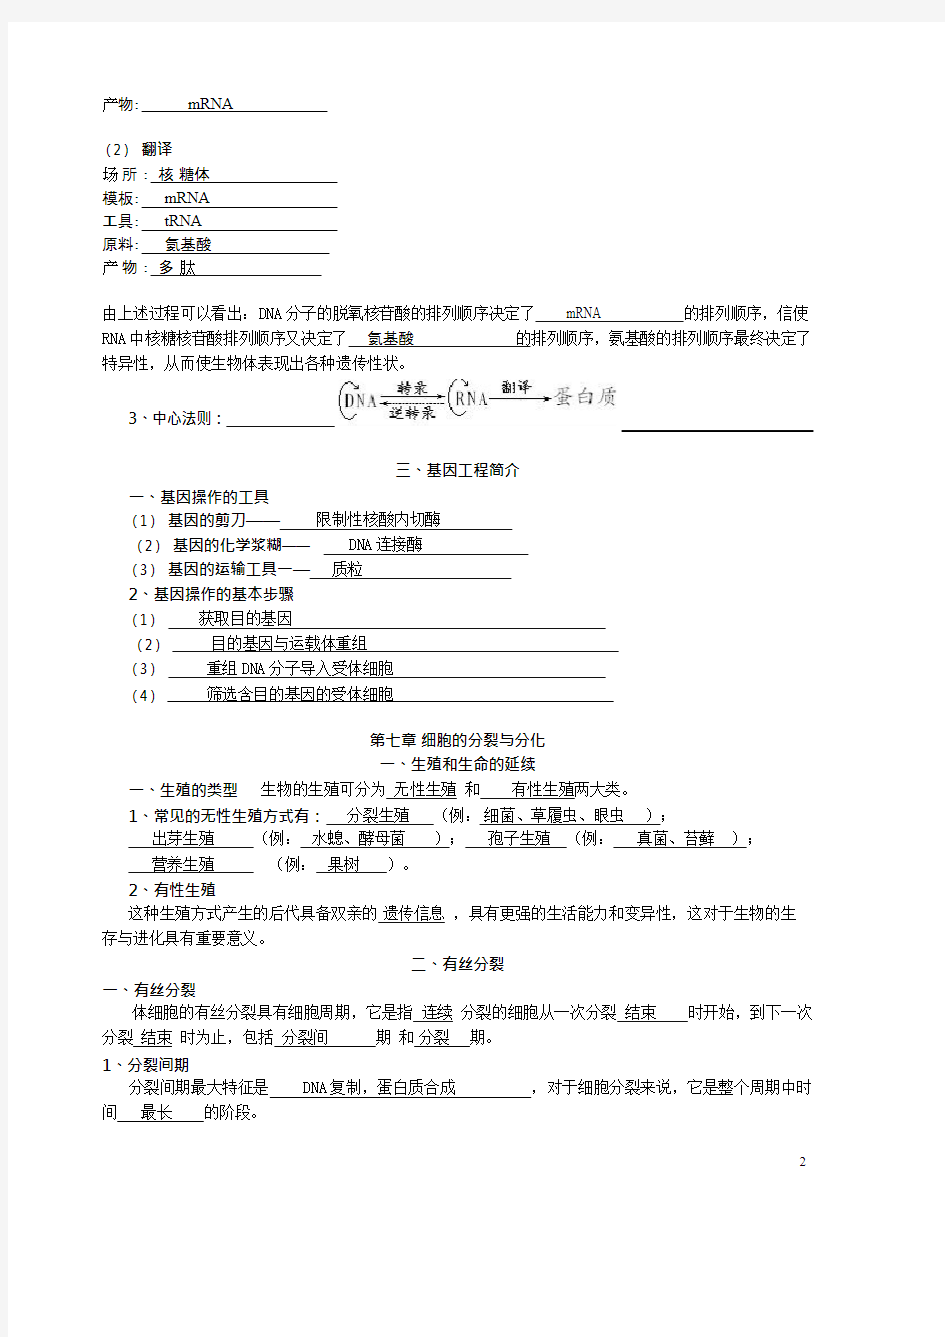 (完整版)上海高考——生物知识点总结,推荐文档